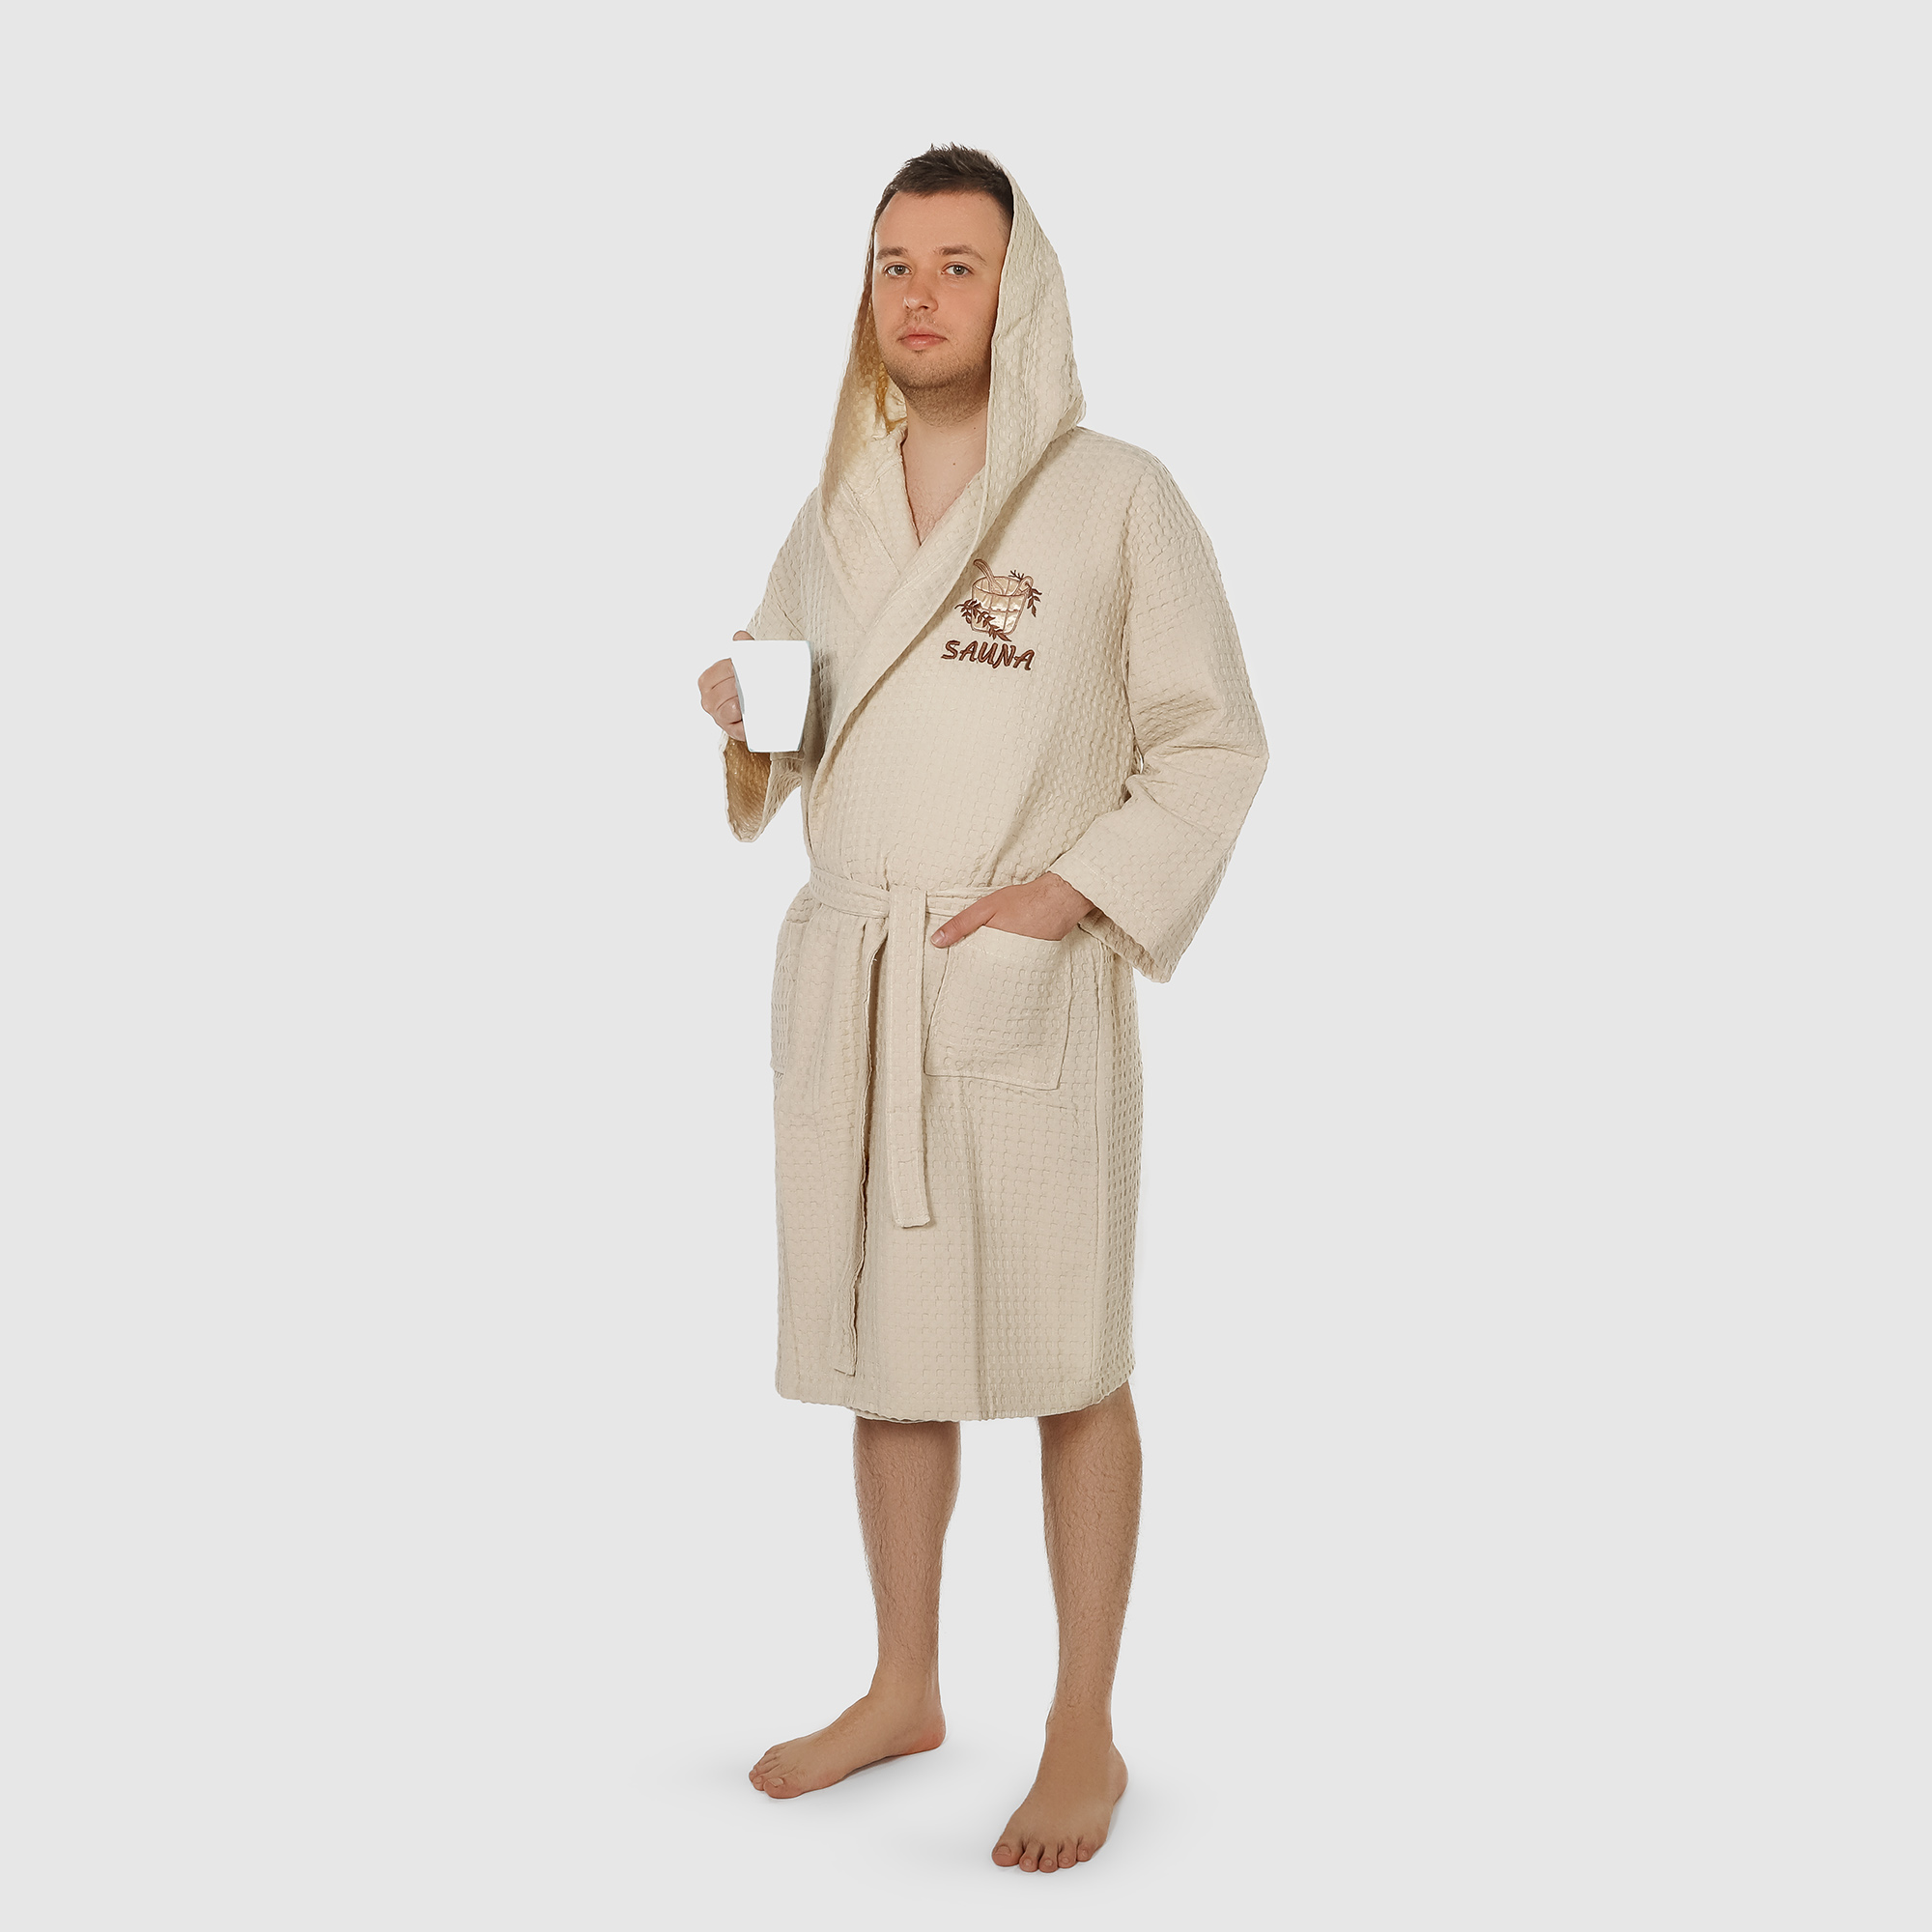 Халат мужской Asil Sauna Brown XL вафельный с капюшоном